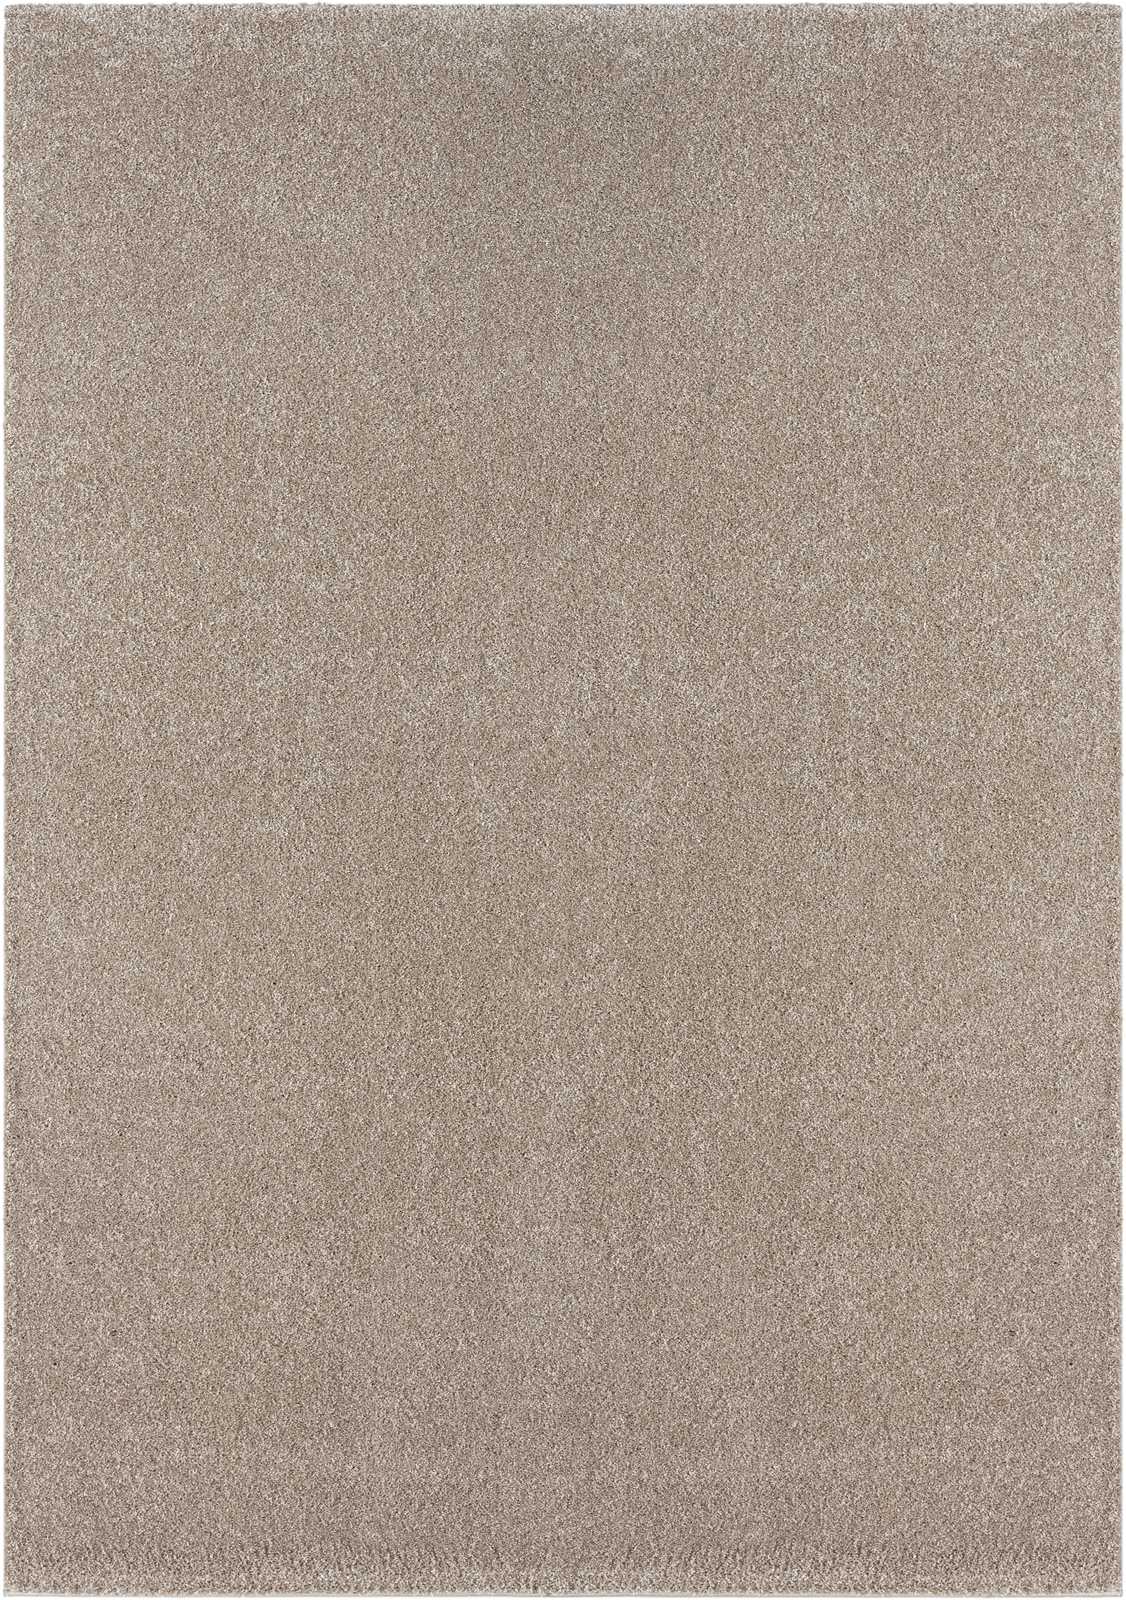             Sanfter Kurzflor Teppich in Beige – 170 x 120 cm
        